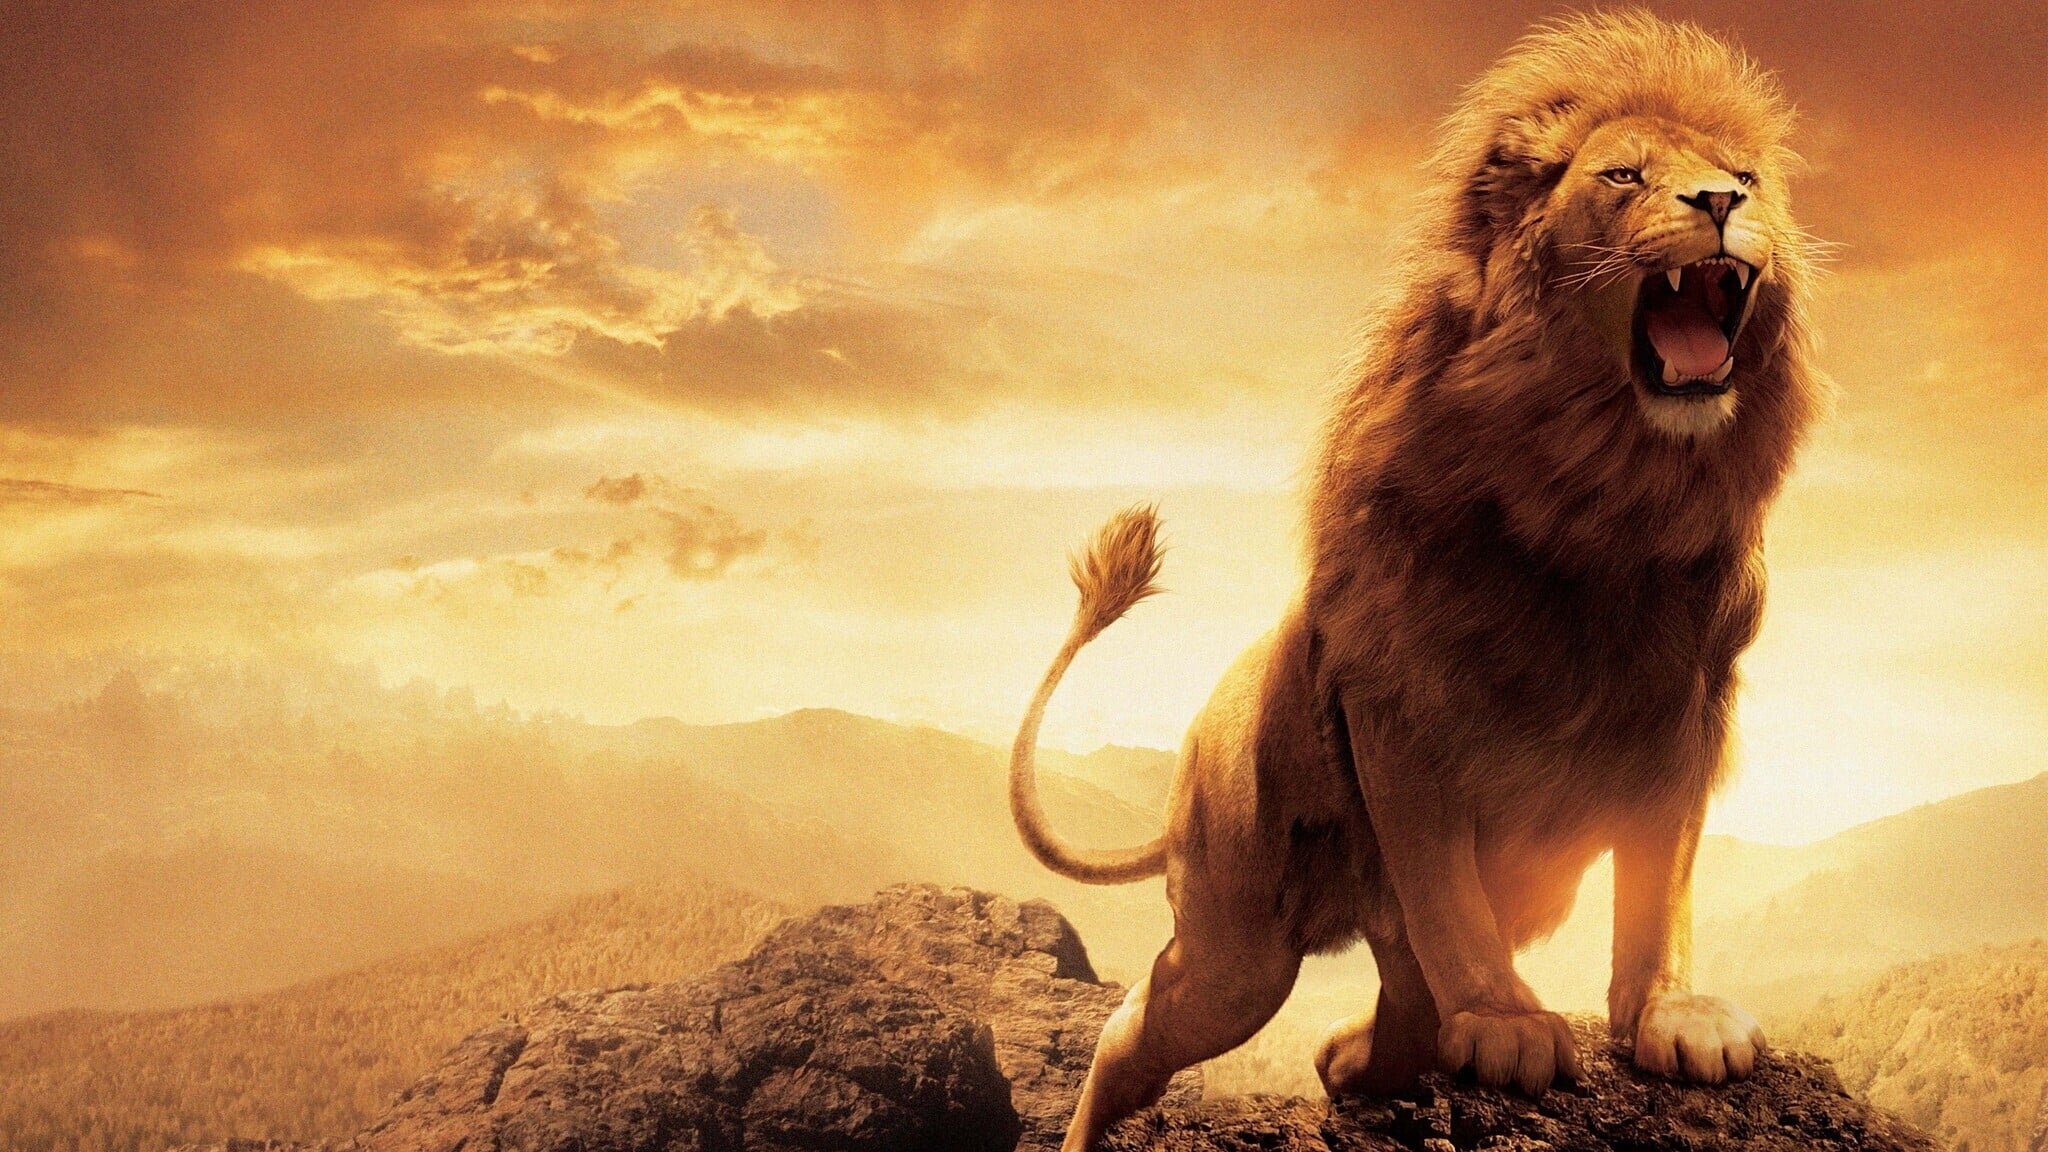 Narnia krónikái: Az oroszlán, a boszorkány és a ruhásszekrény (2005)